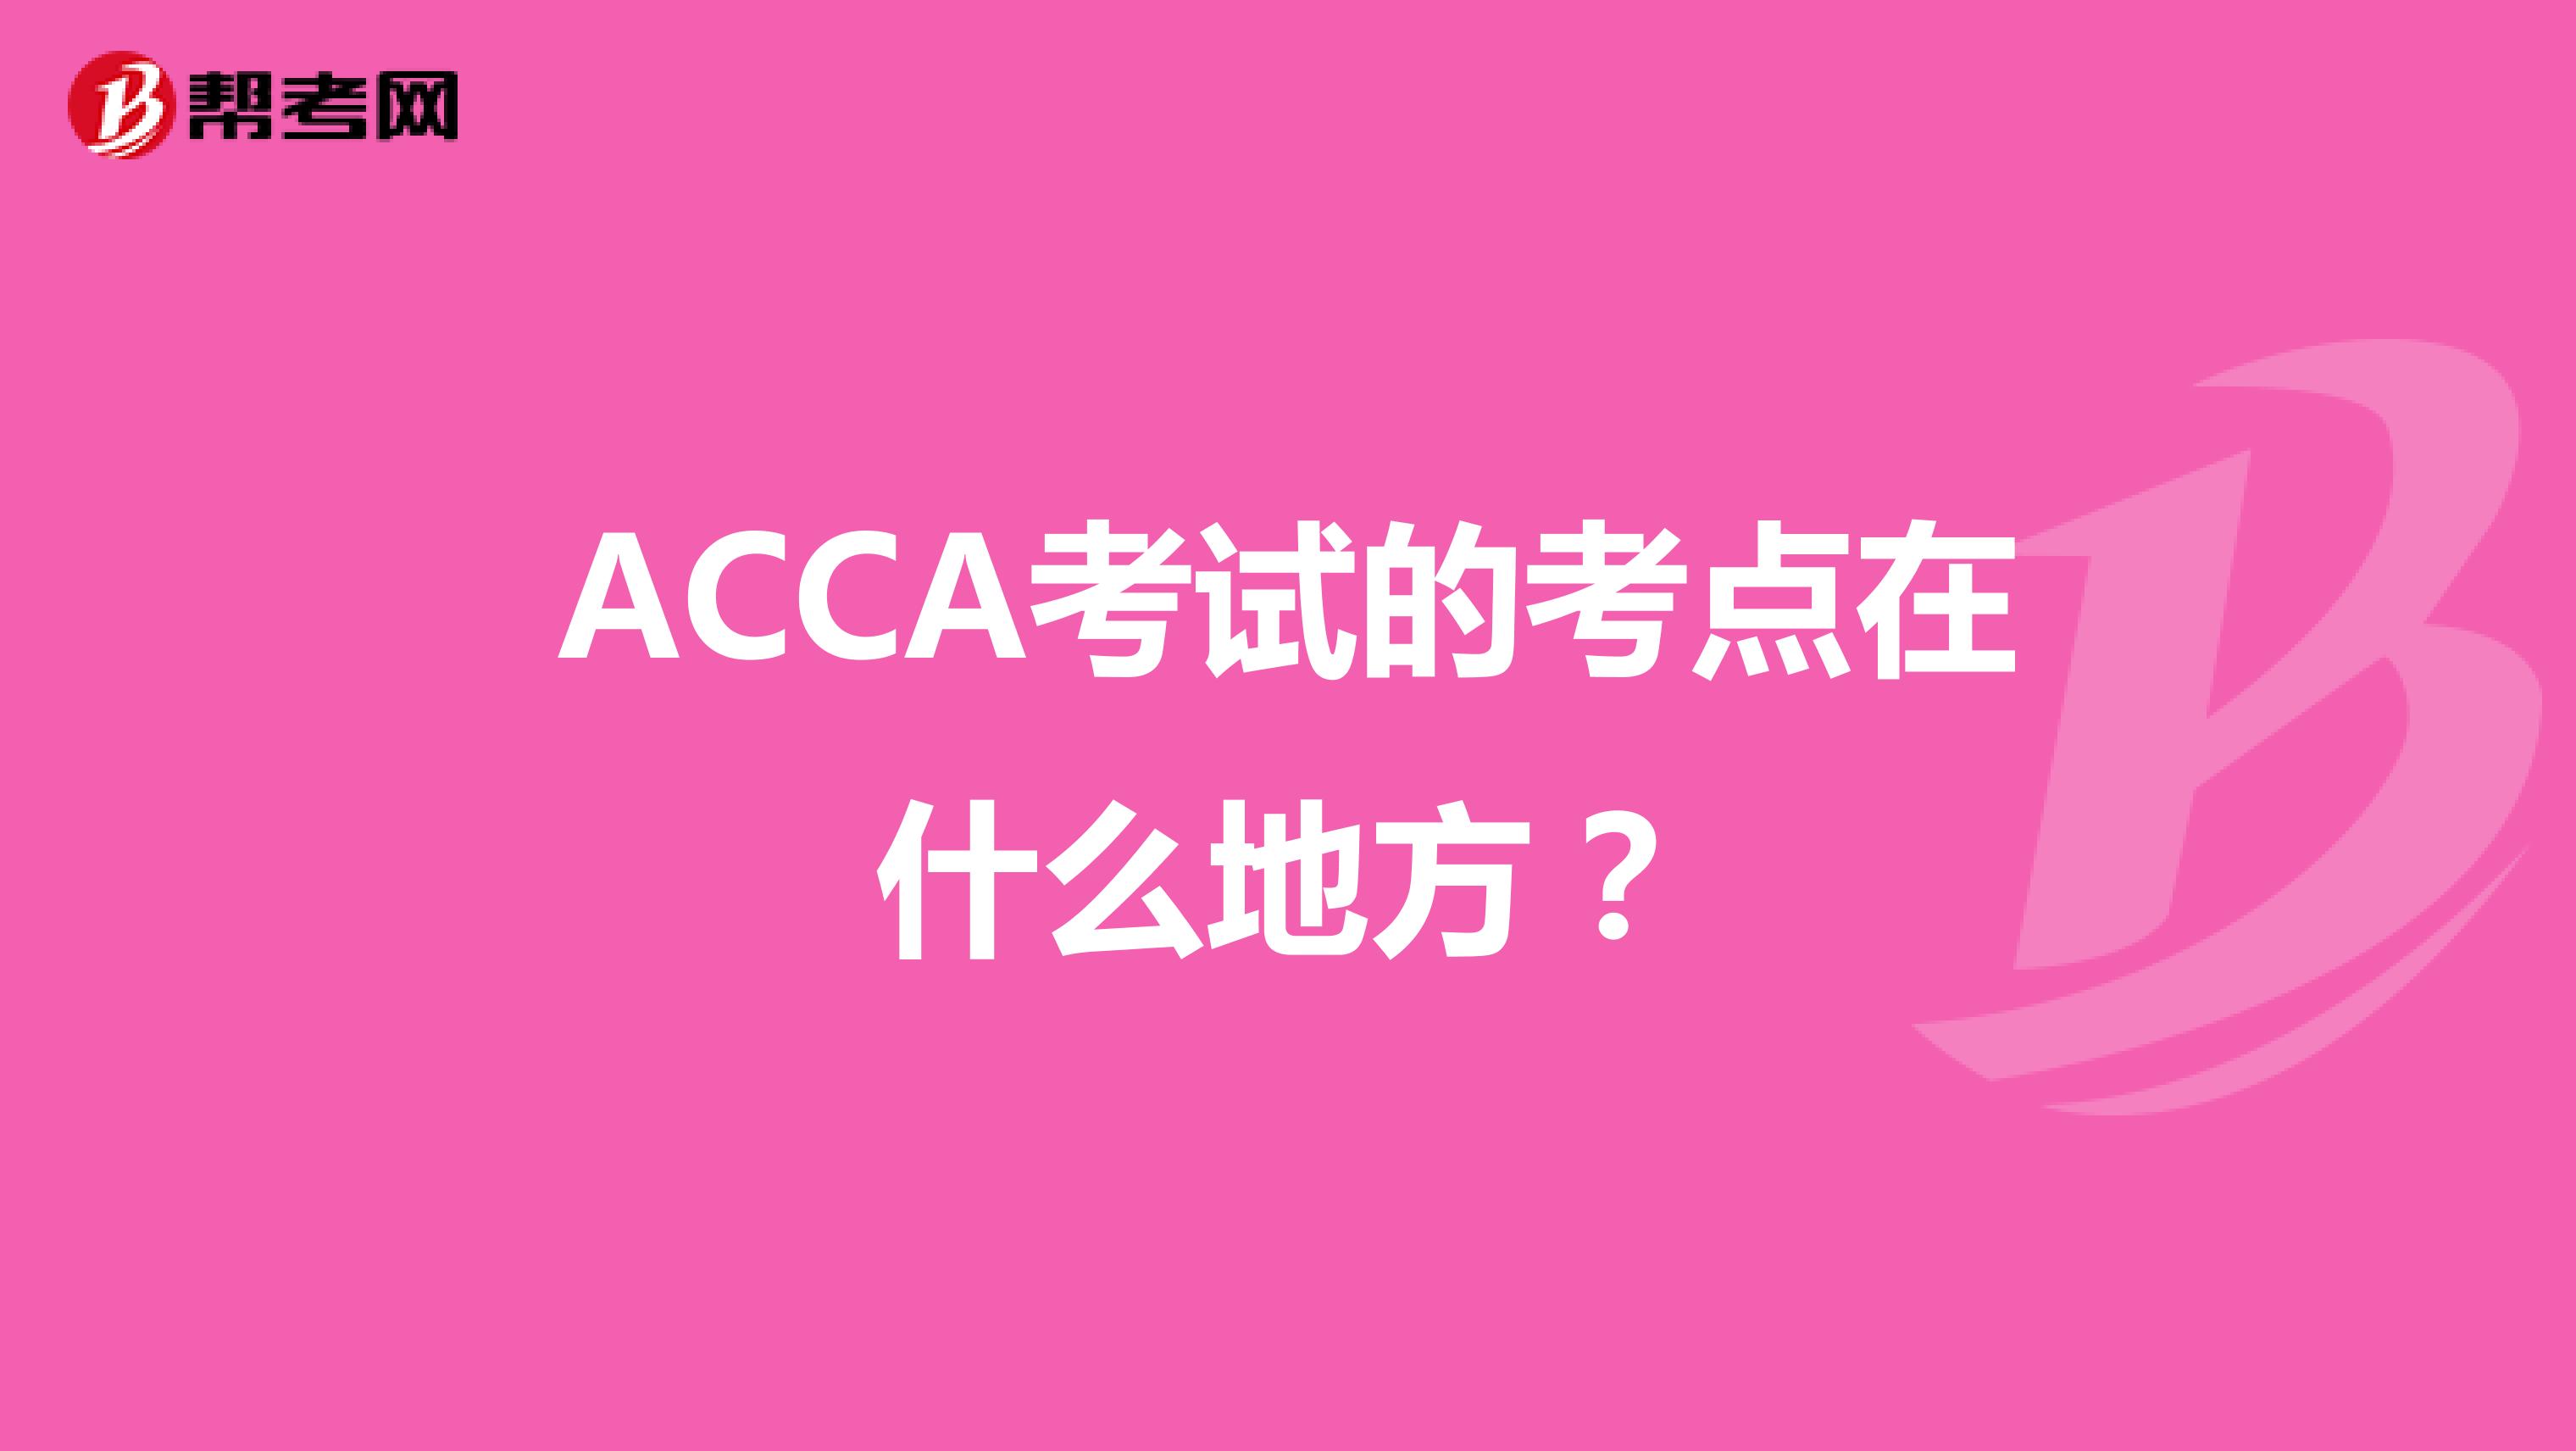 ACCA考试的考点在什么地方？